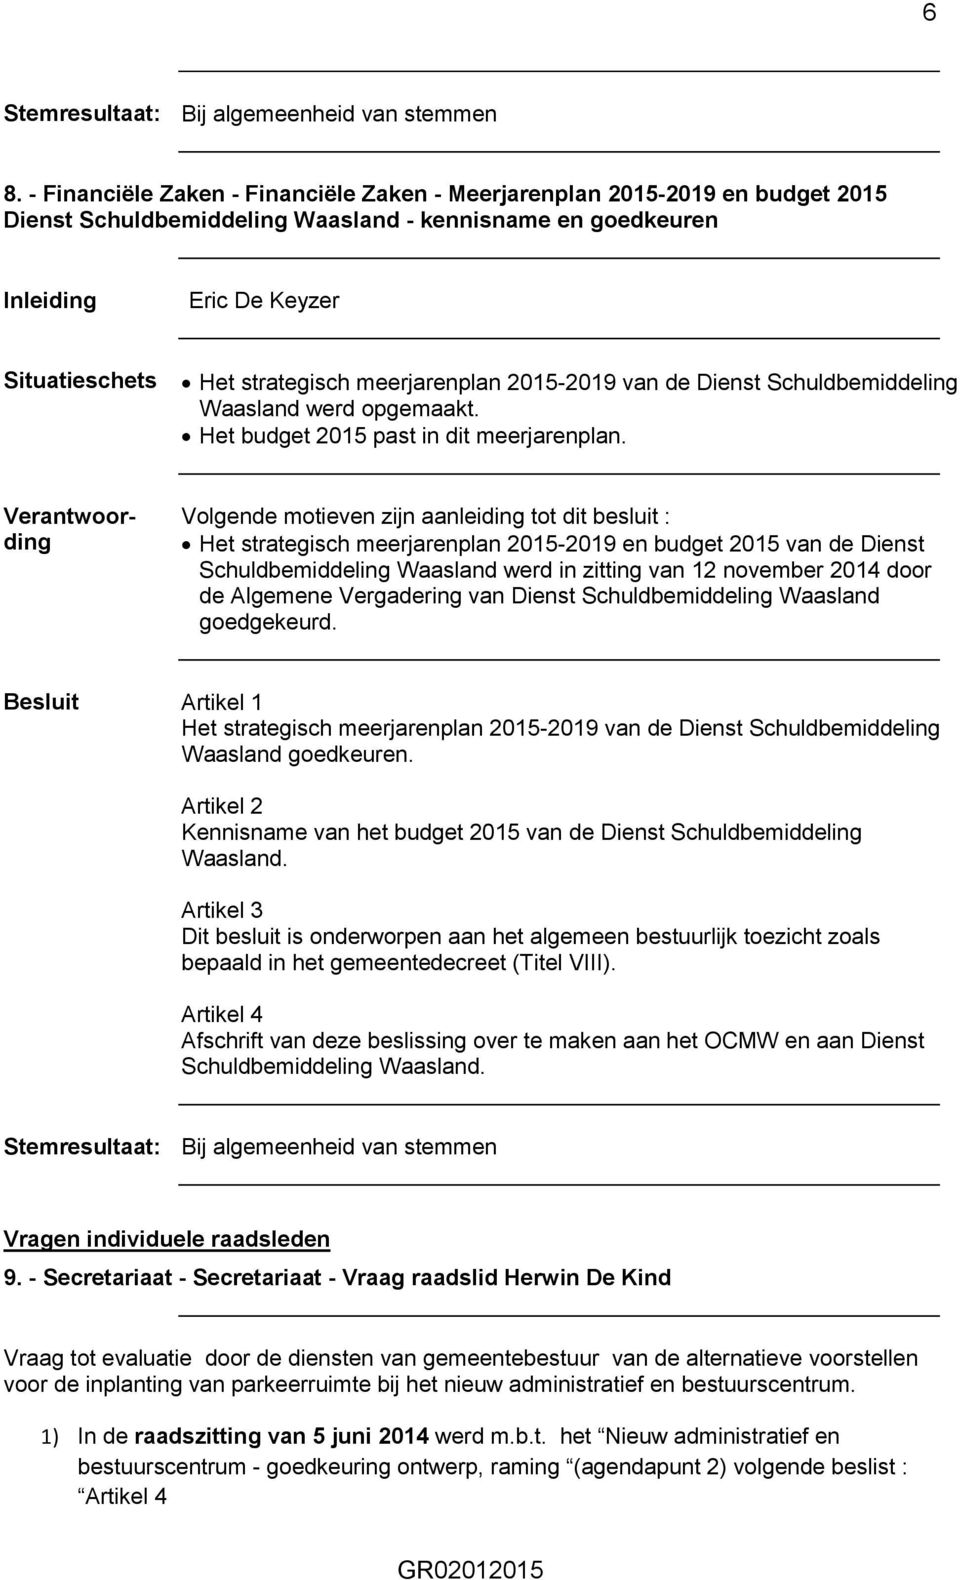 2015-2019 van de Dienst Schuldbemiddeling Waasland werd opgemaakt. Het budget 2015 past in dit meerjarenplan.